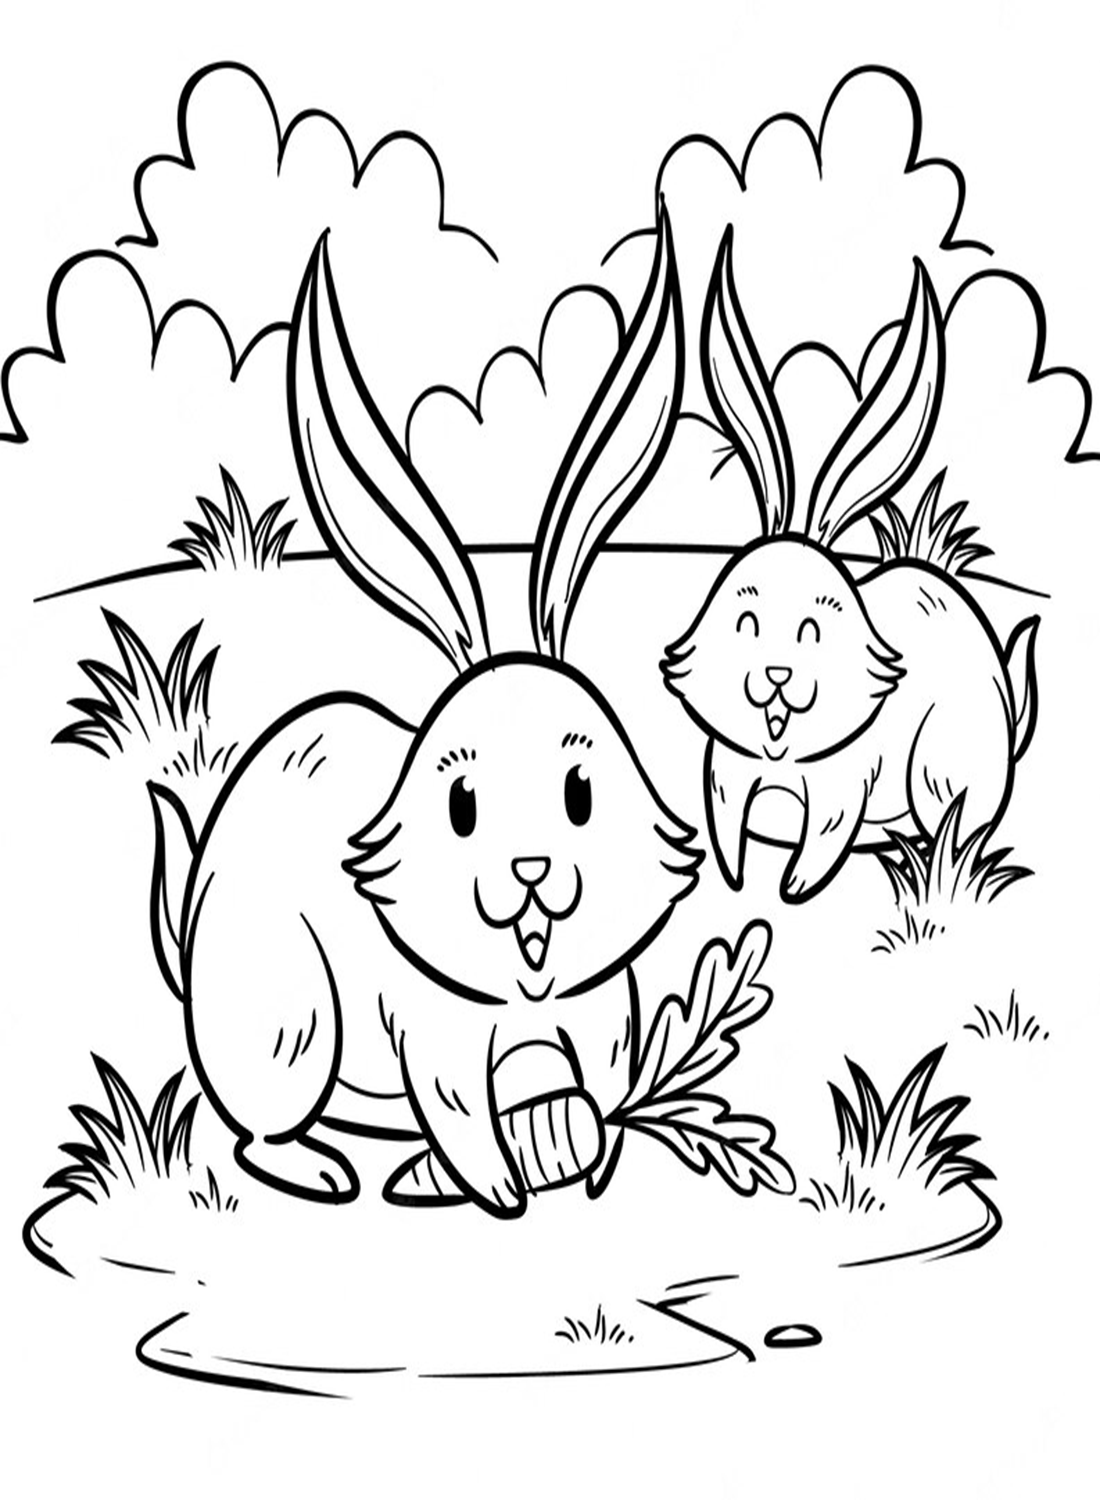 Twee konijnen spelen op het gras van Rabbit